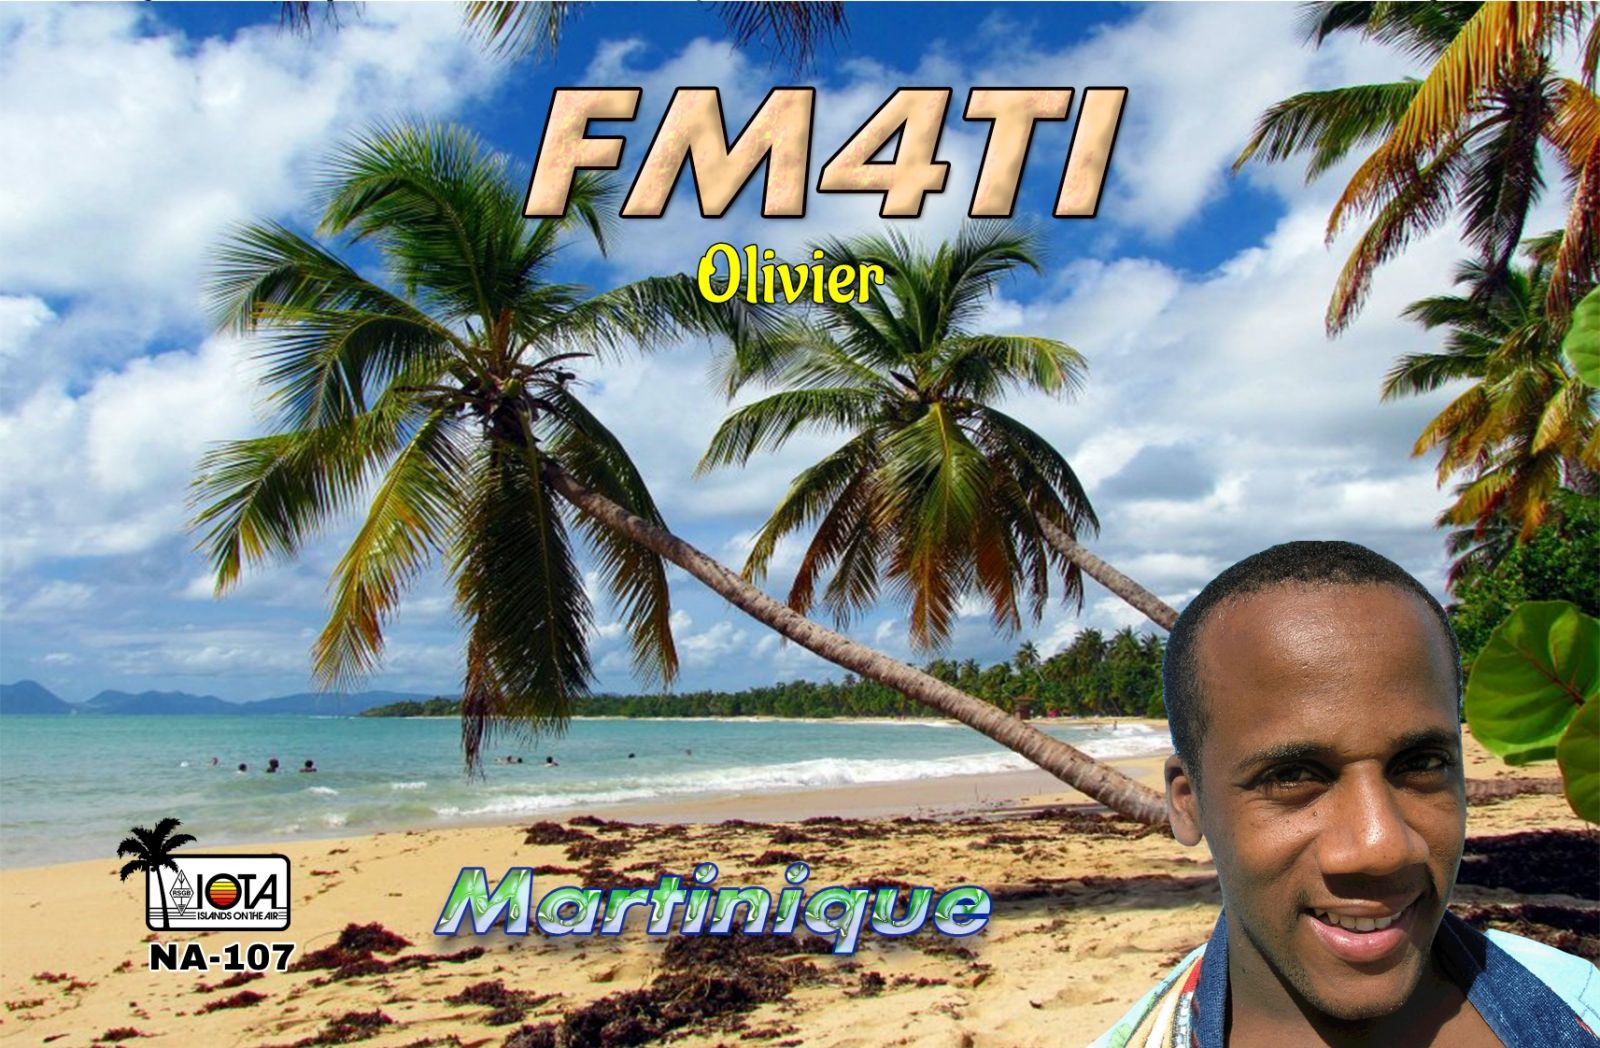 FM4TI - Fort de France - Martinique Island